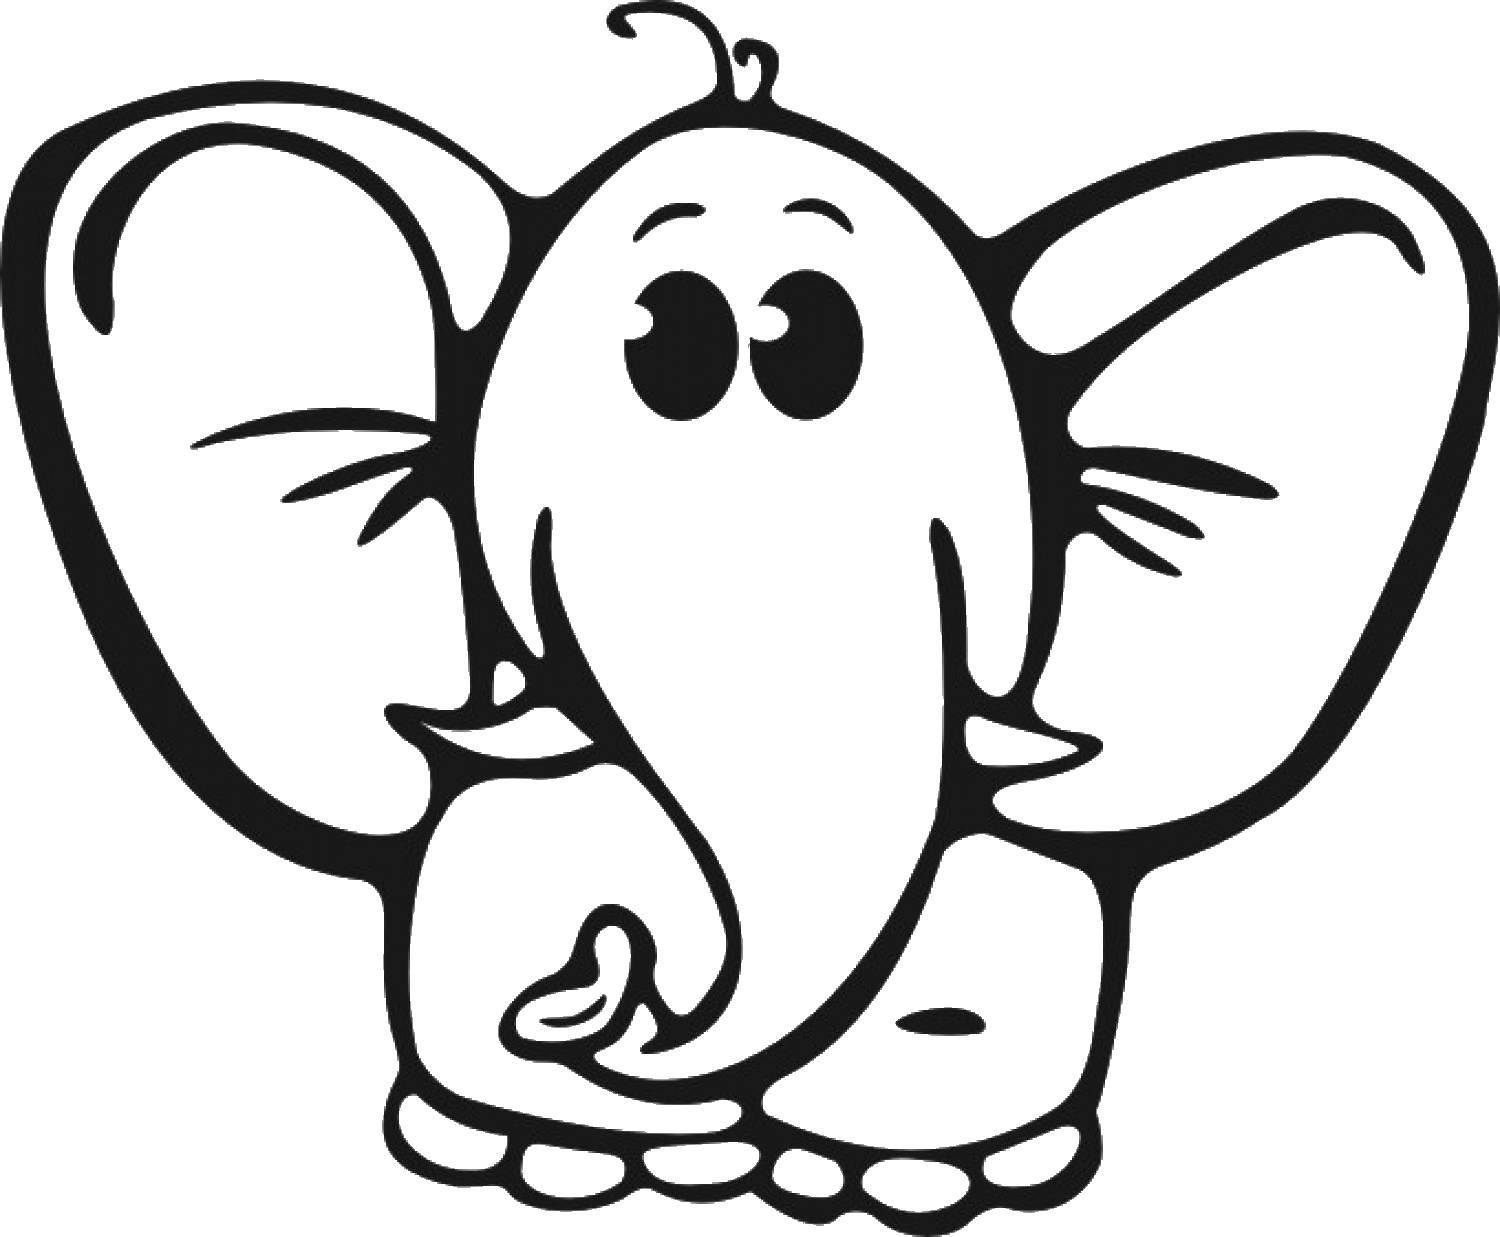 Coloring Elephant. Category Animals. Tags:  animals, elephant, elephant.